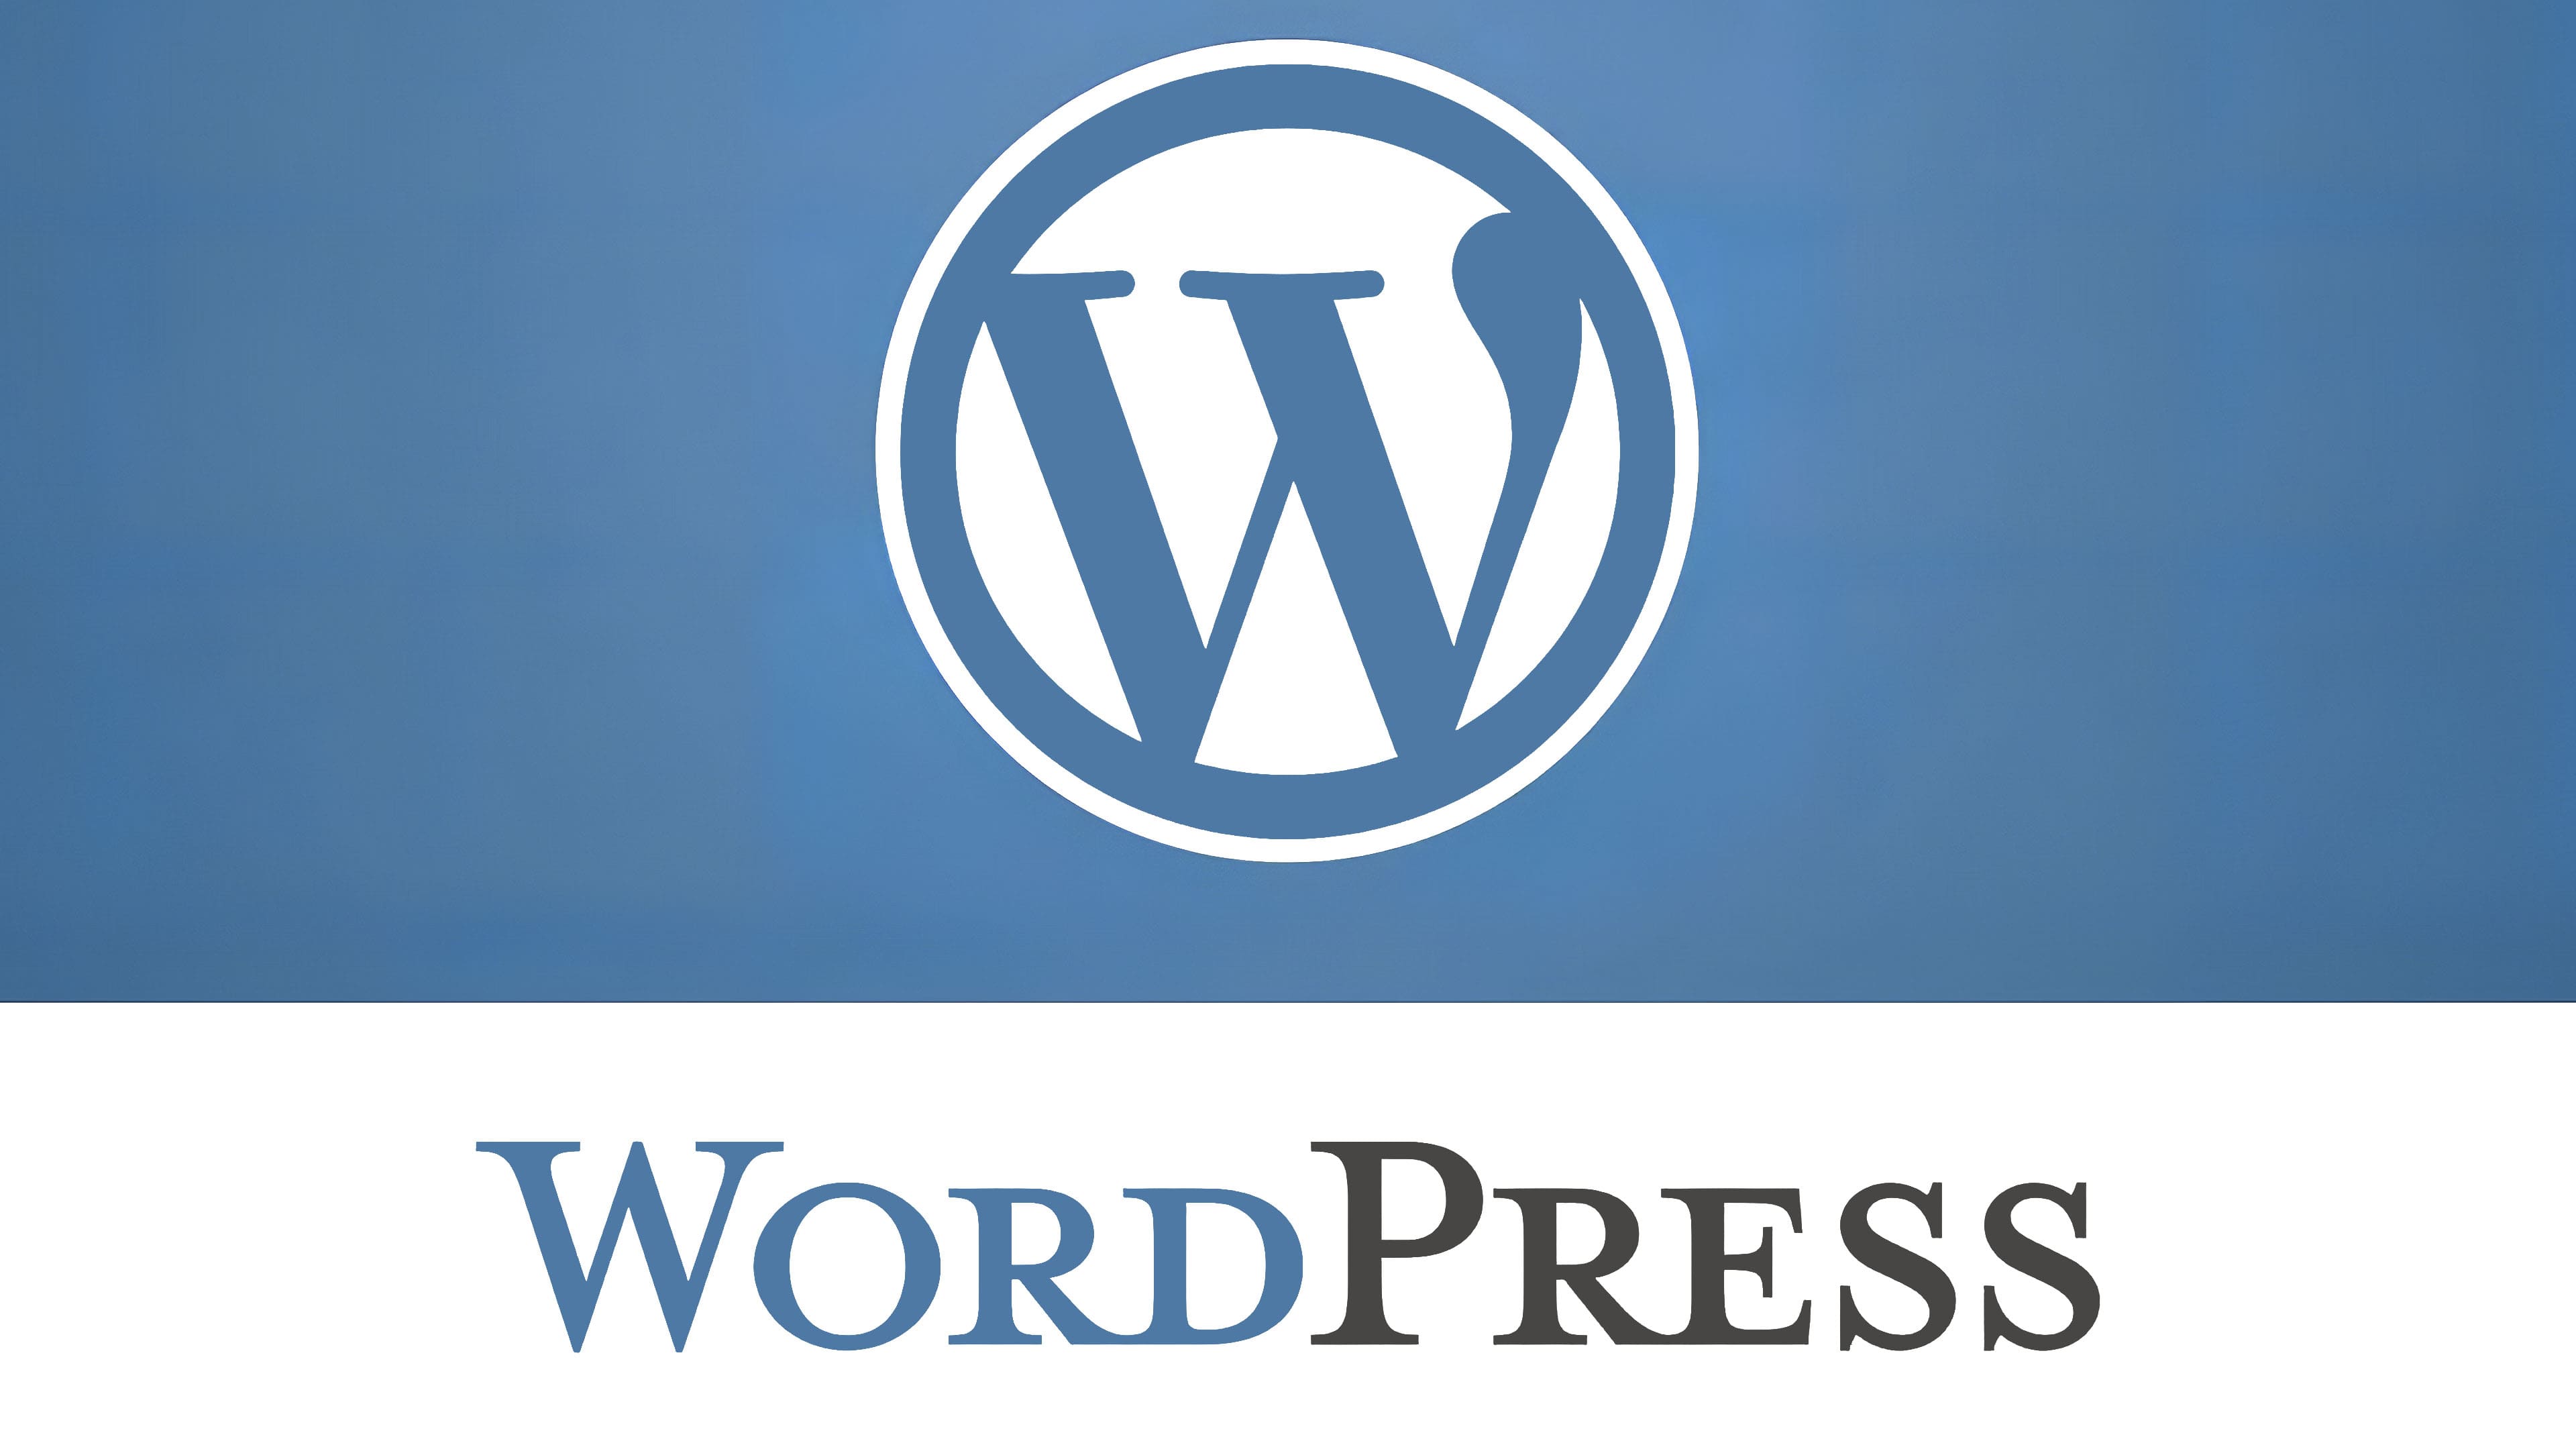 Wordpress открытый. Вордпресс. Вордпресс логотип. WORDPRESS картинки. Cms вордпресс.